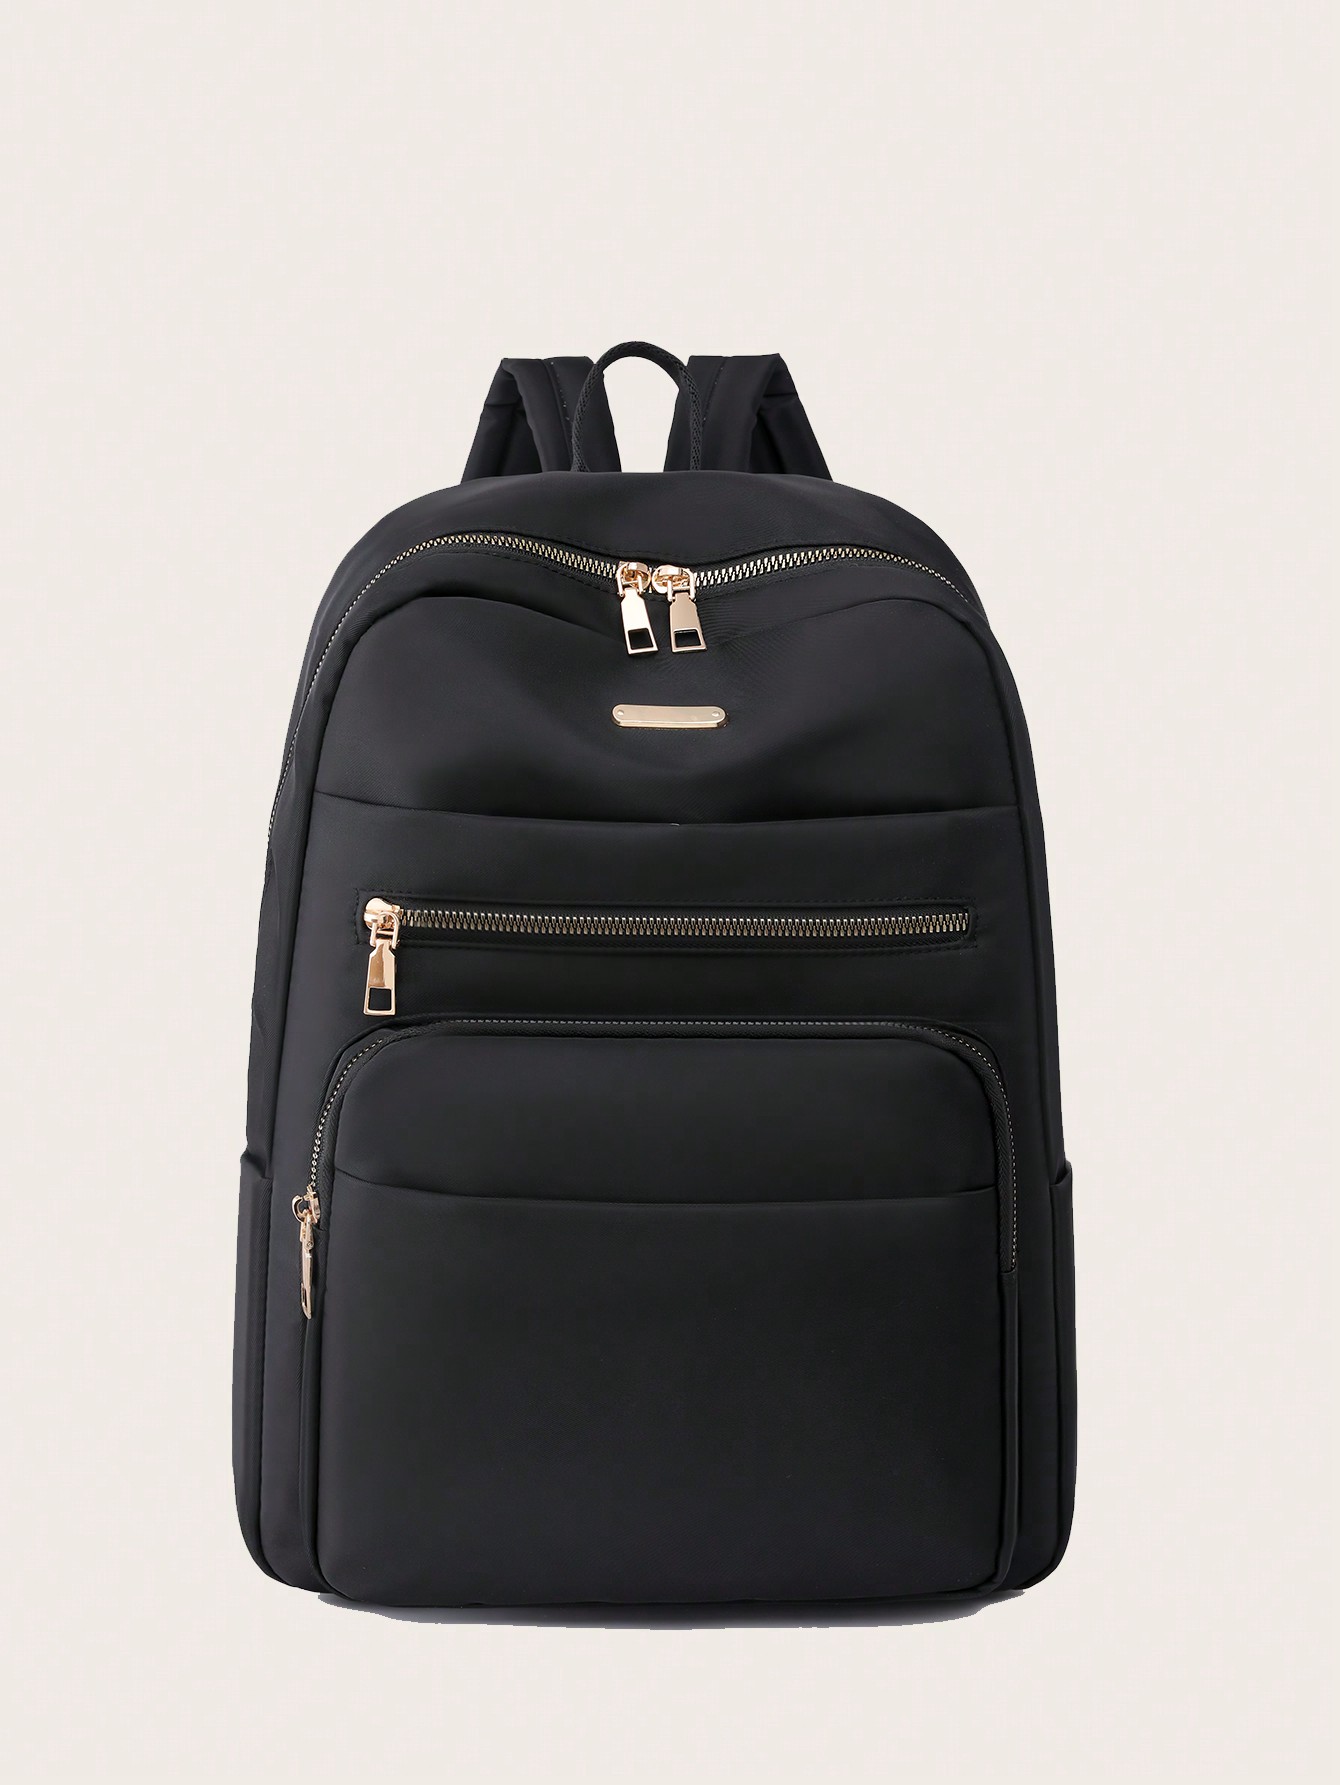 Водонепроницаемый портативный рюкзак большой емкости с передним карманом, черный мужской минималистичный рюкзак большой вместимости серый